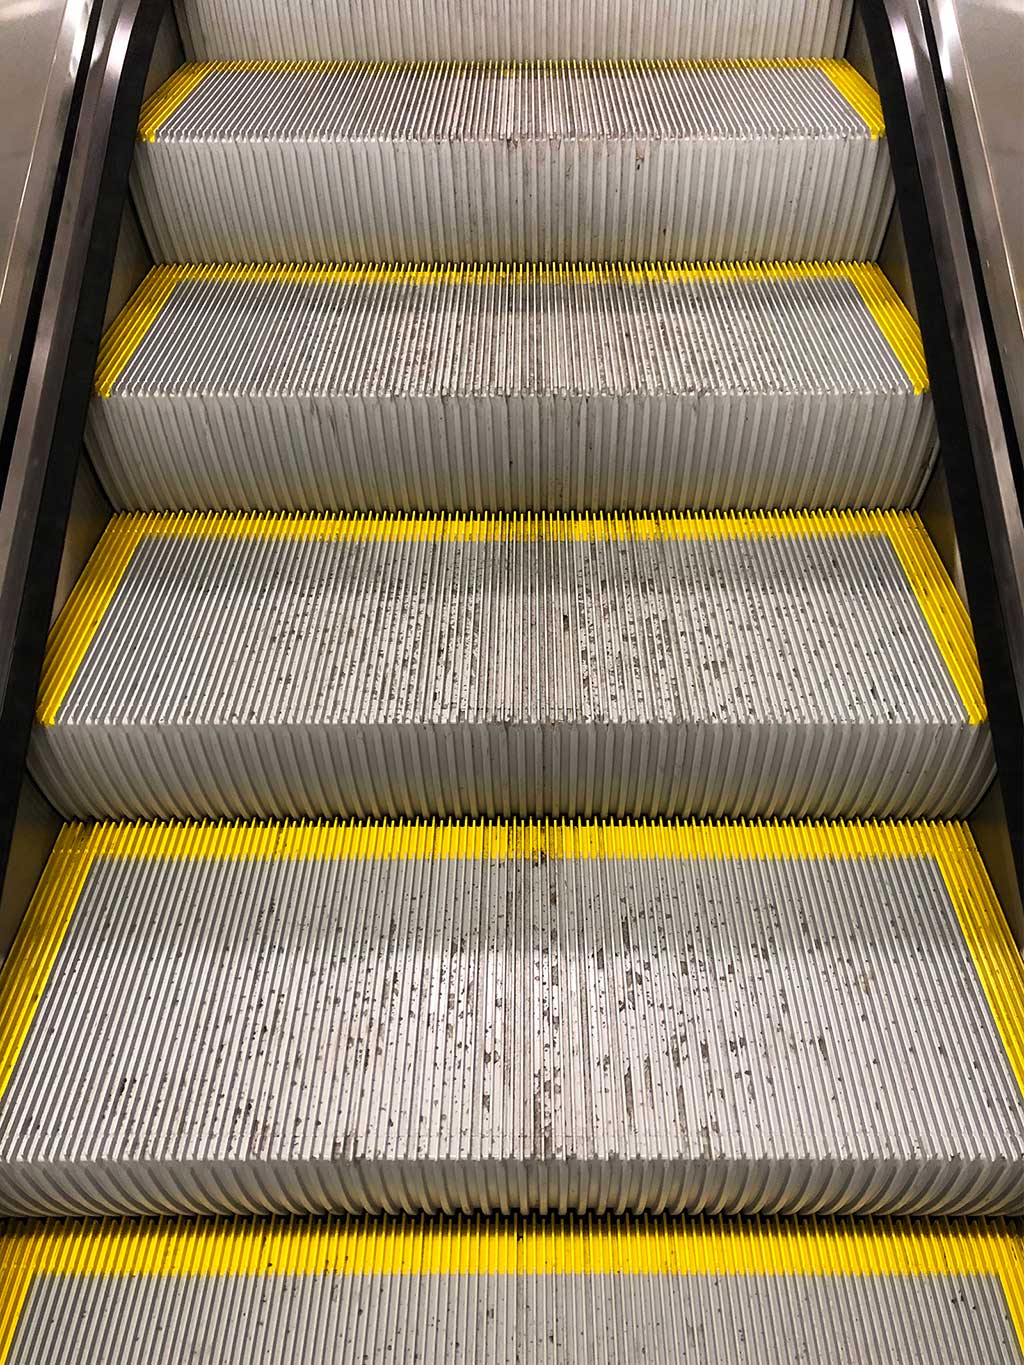 Rolltreppe mit gelben Markierungen